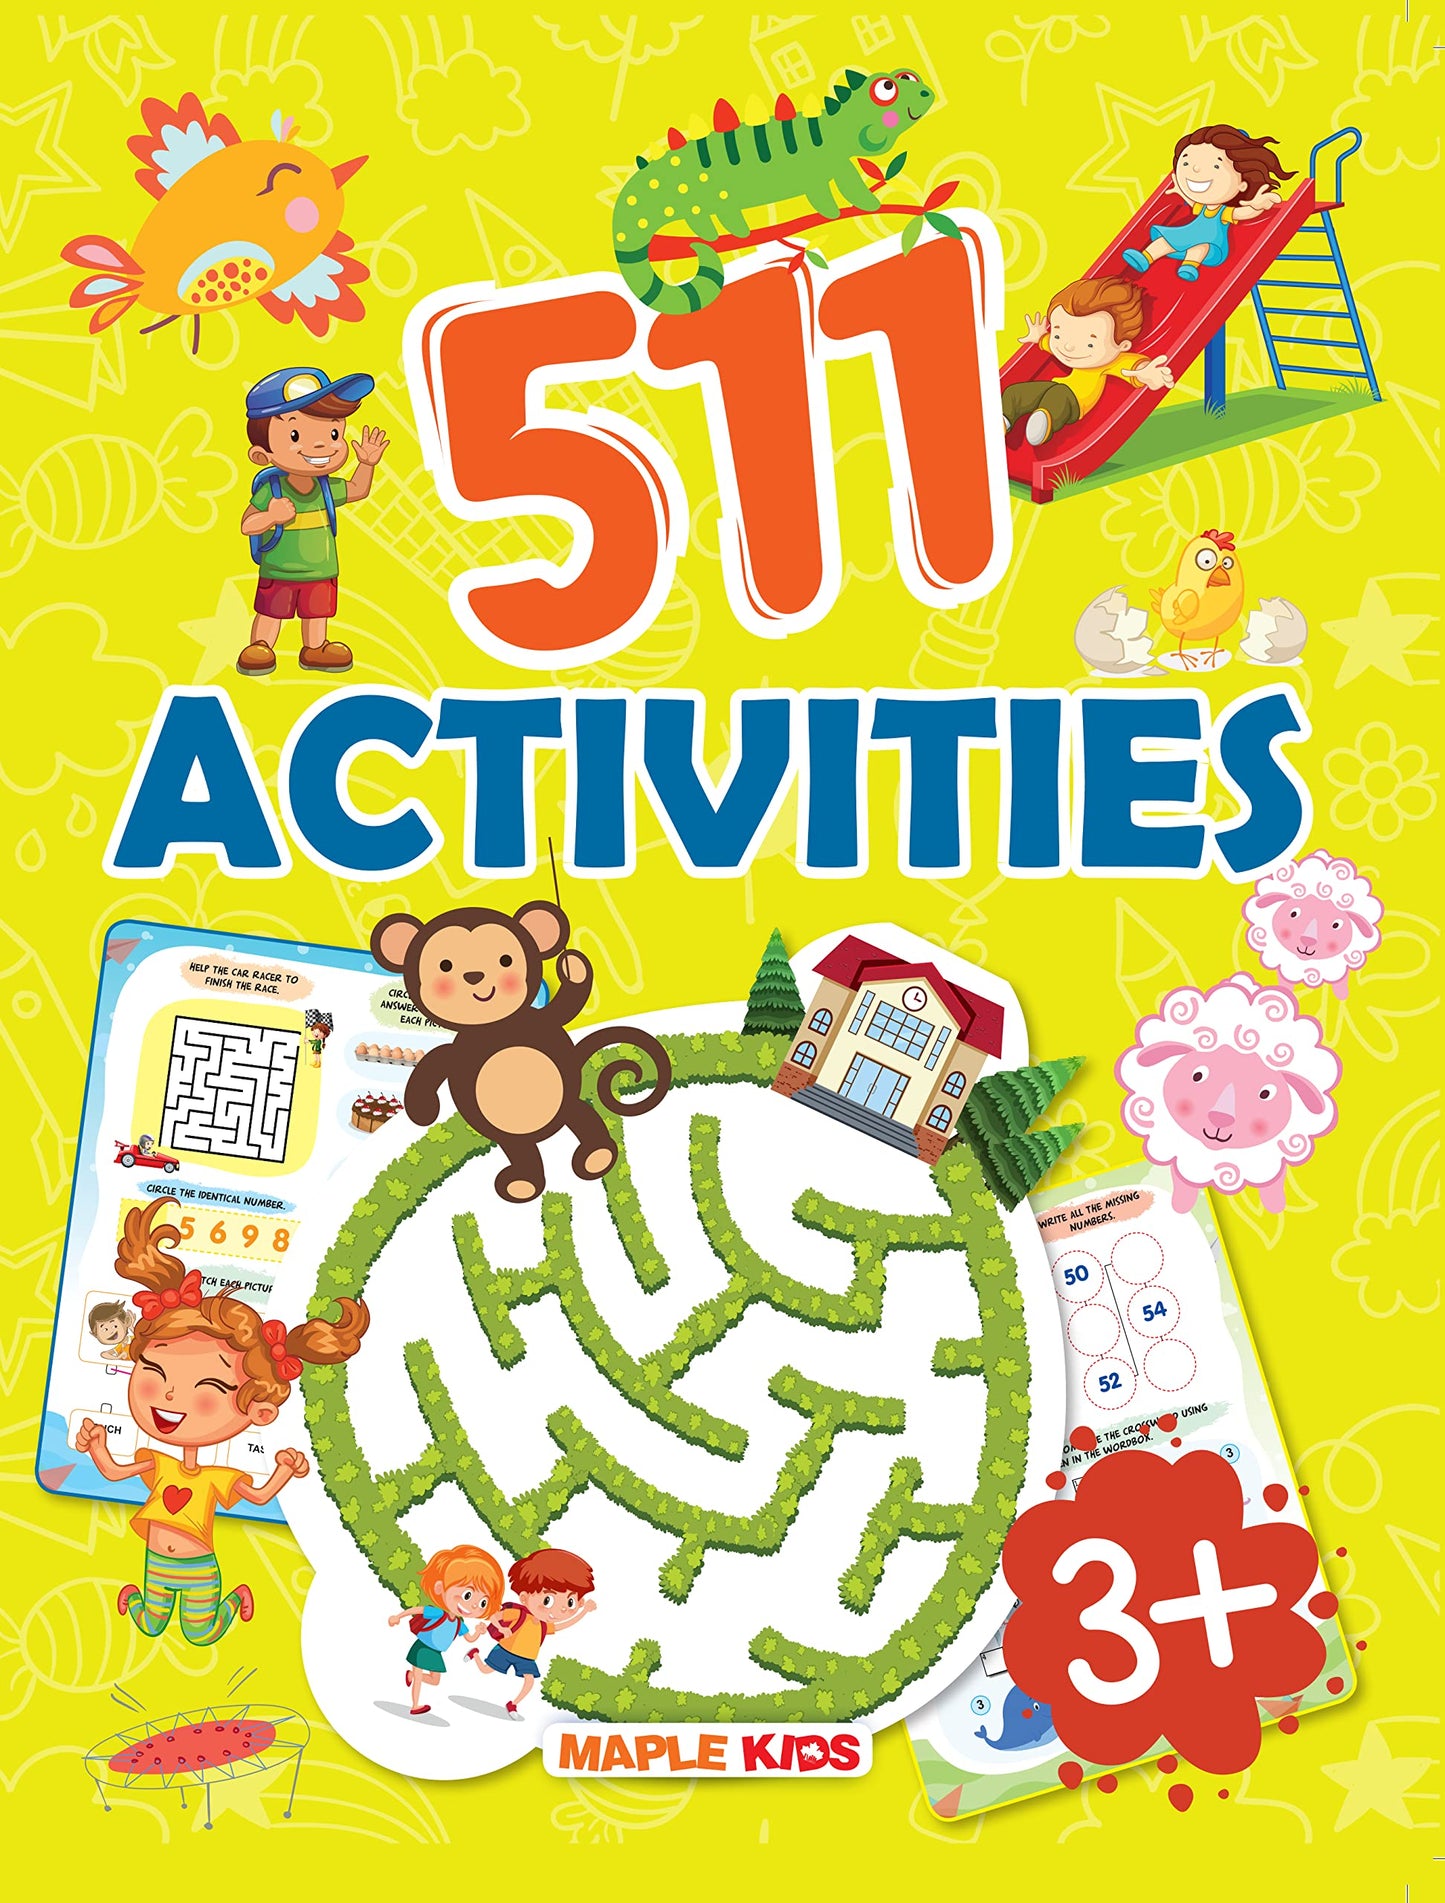 500+ activities for kids